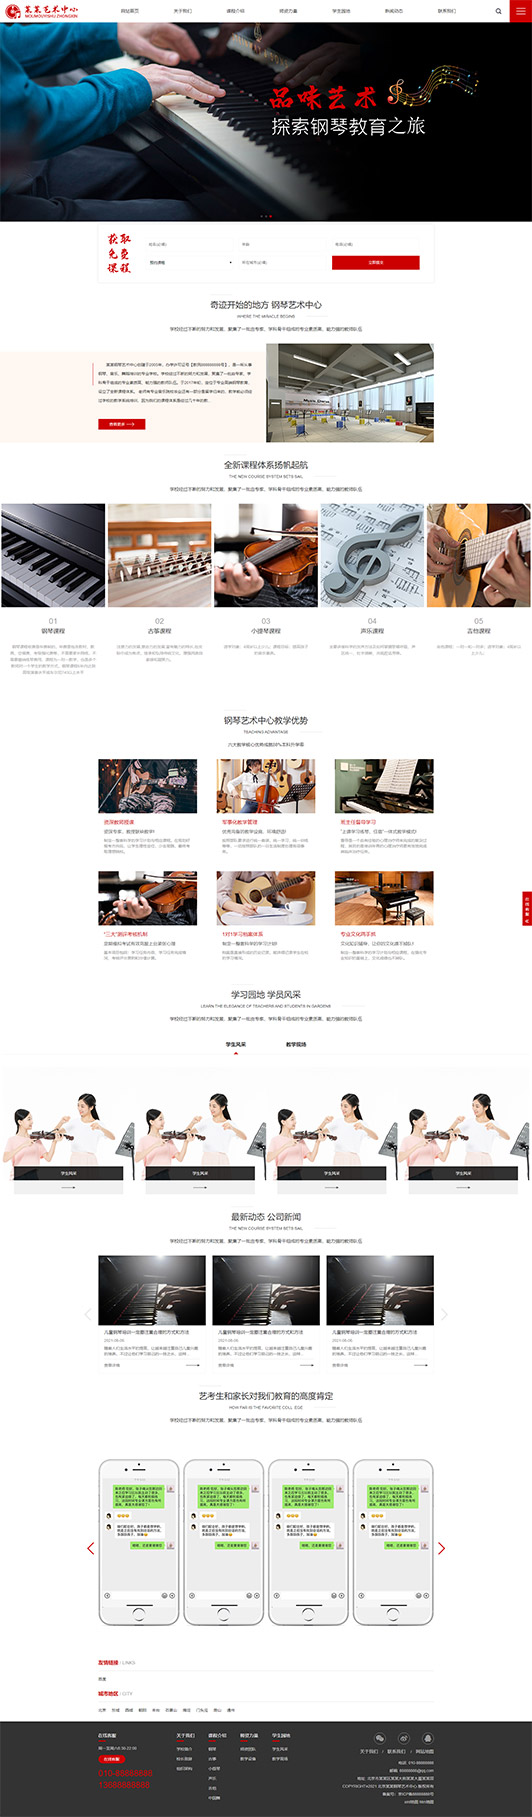 佛山钢琴艺术培训公司响应式企业网站